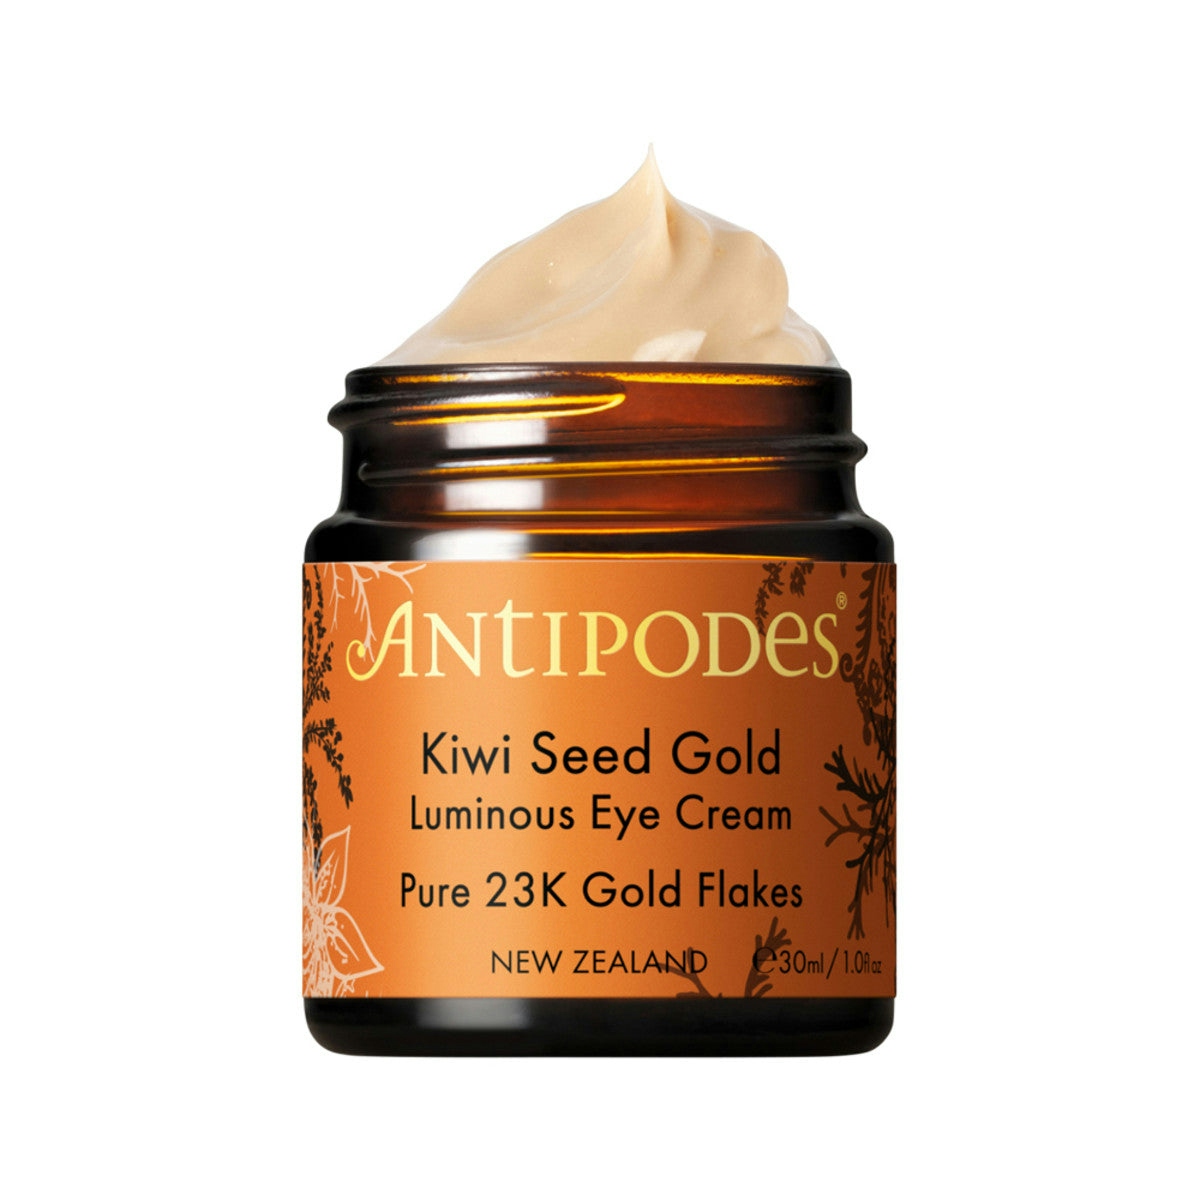 Antipodes Kiwi Seed Gold Luminous Eye Cream (Pure 23K Gold Flakes) 30ml